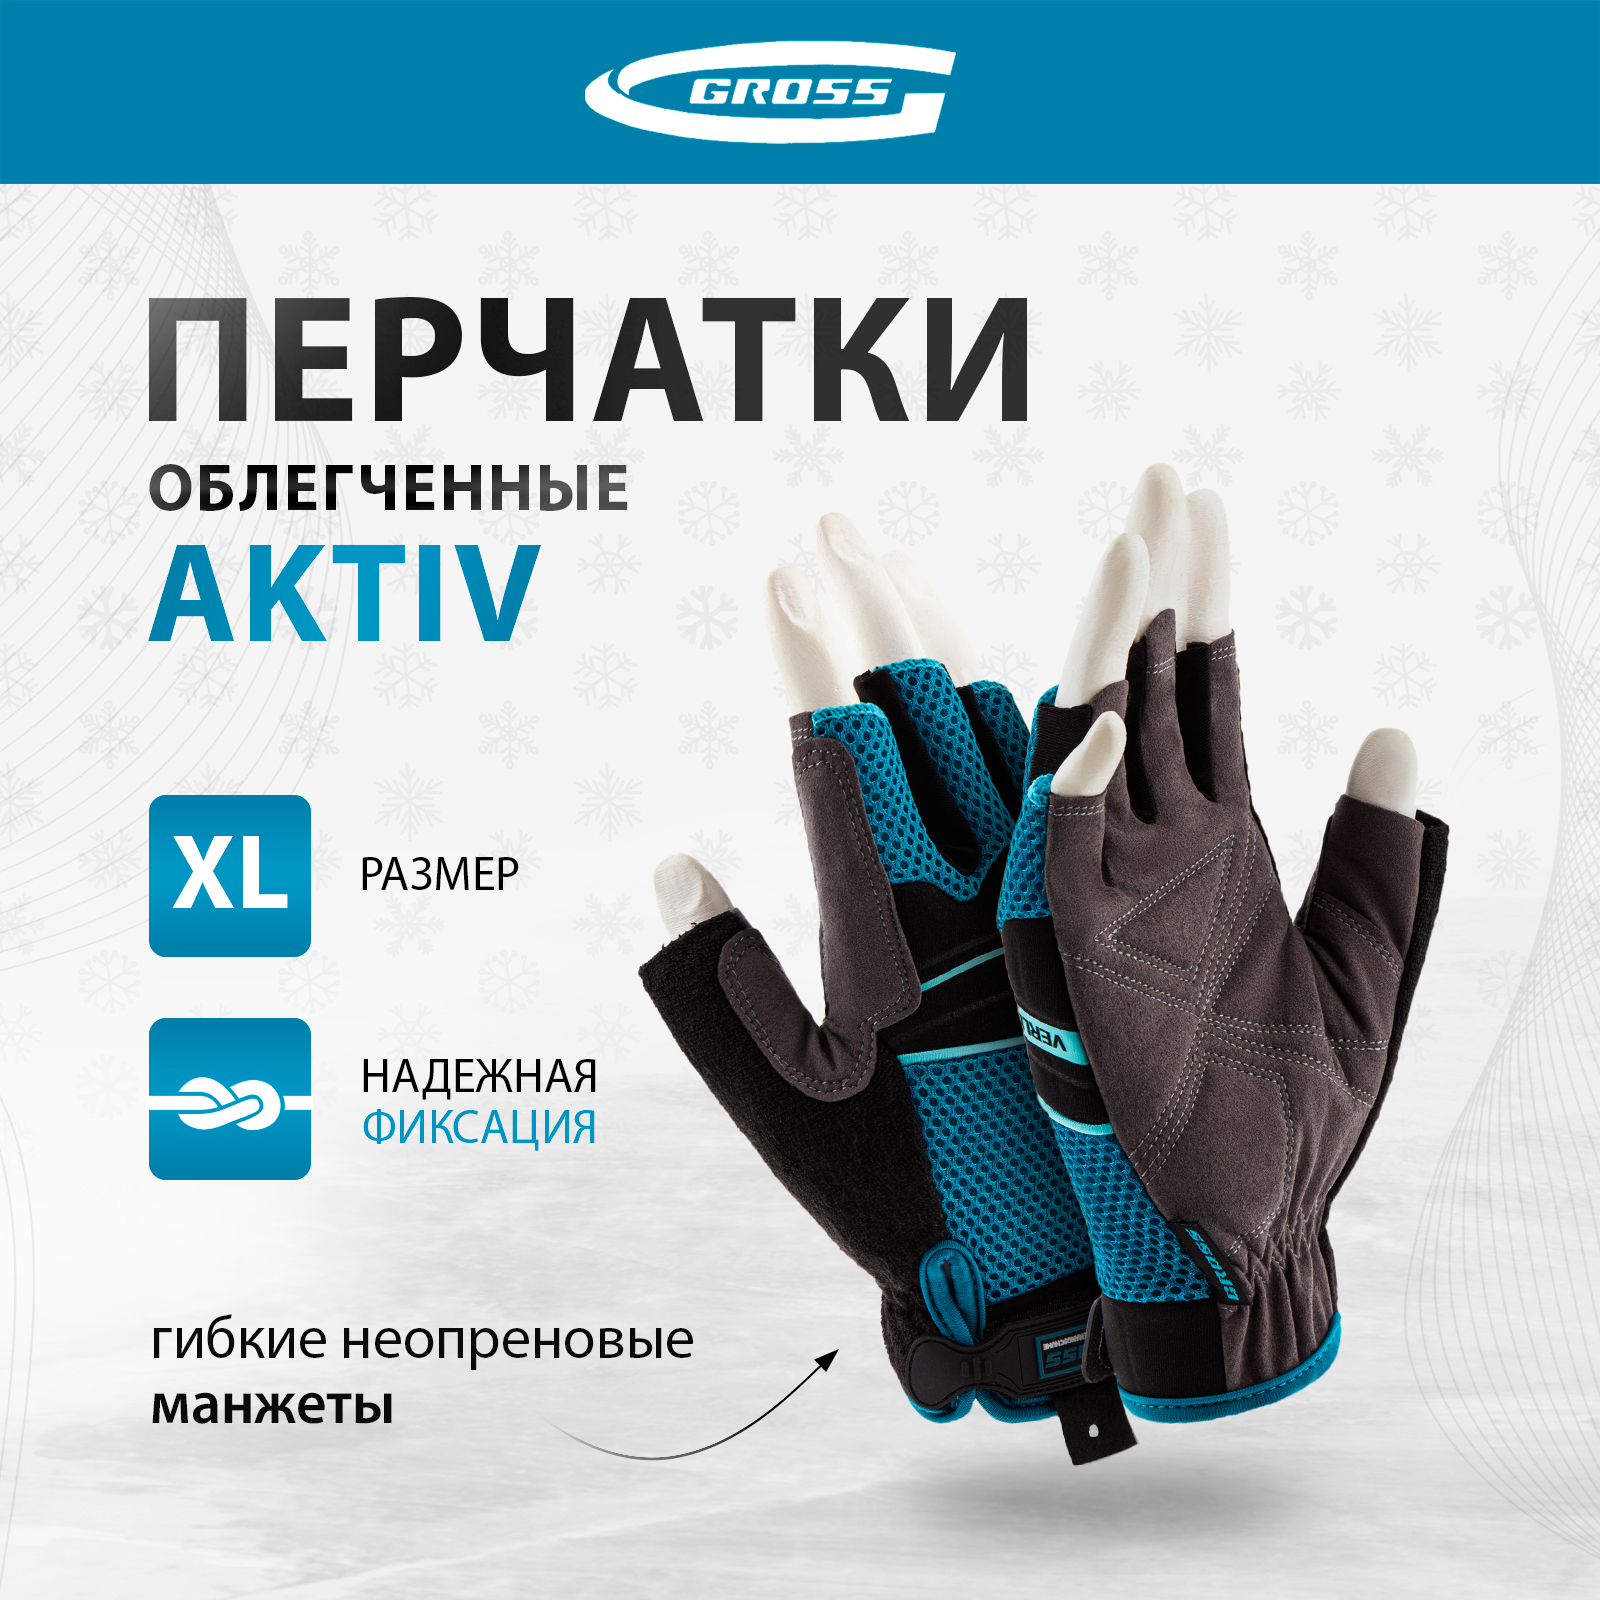 Перчатки комбинированные облегченные GROSS AKTIV открытые пальцыразмер XL (10) 90310 перчатки универсальные комбинированные gross stylish с накладками р xl 10 90320